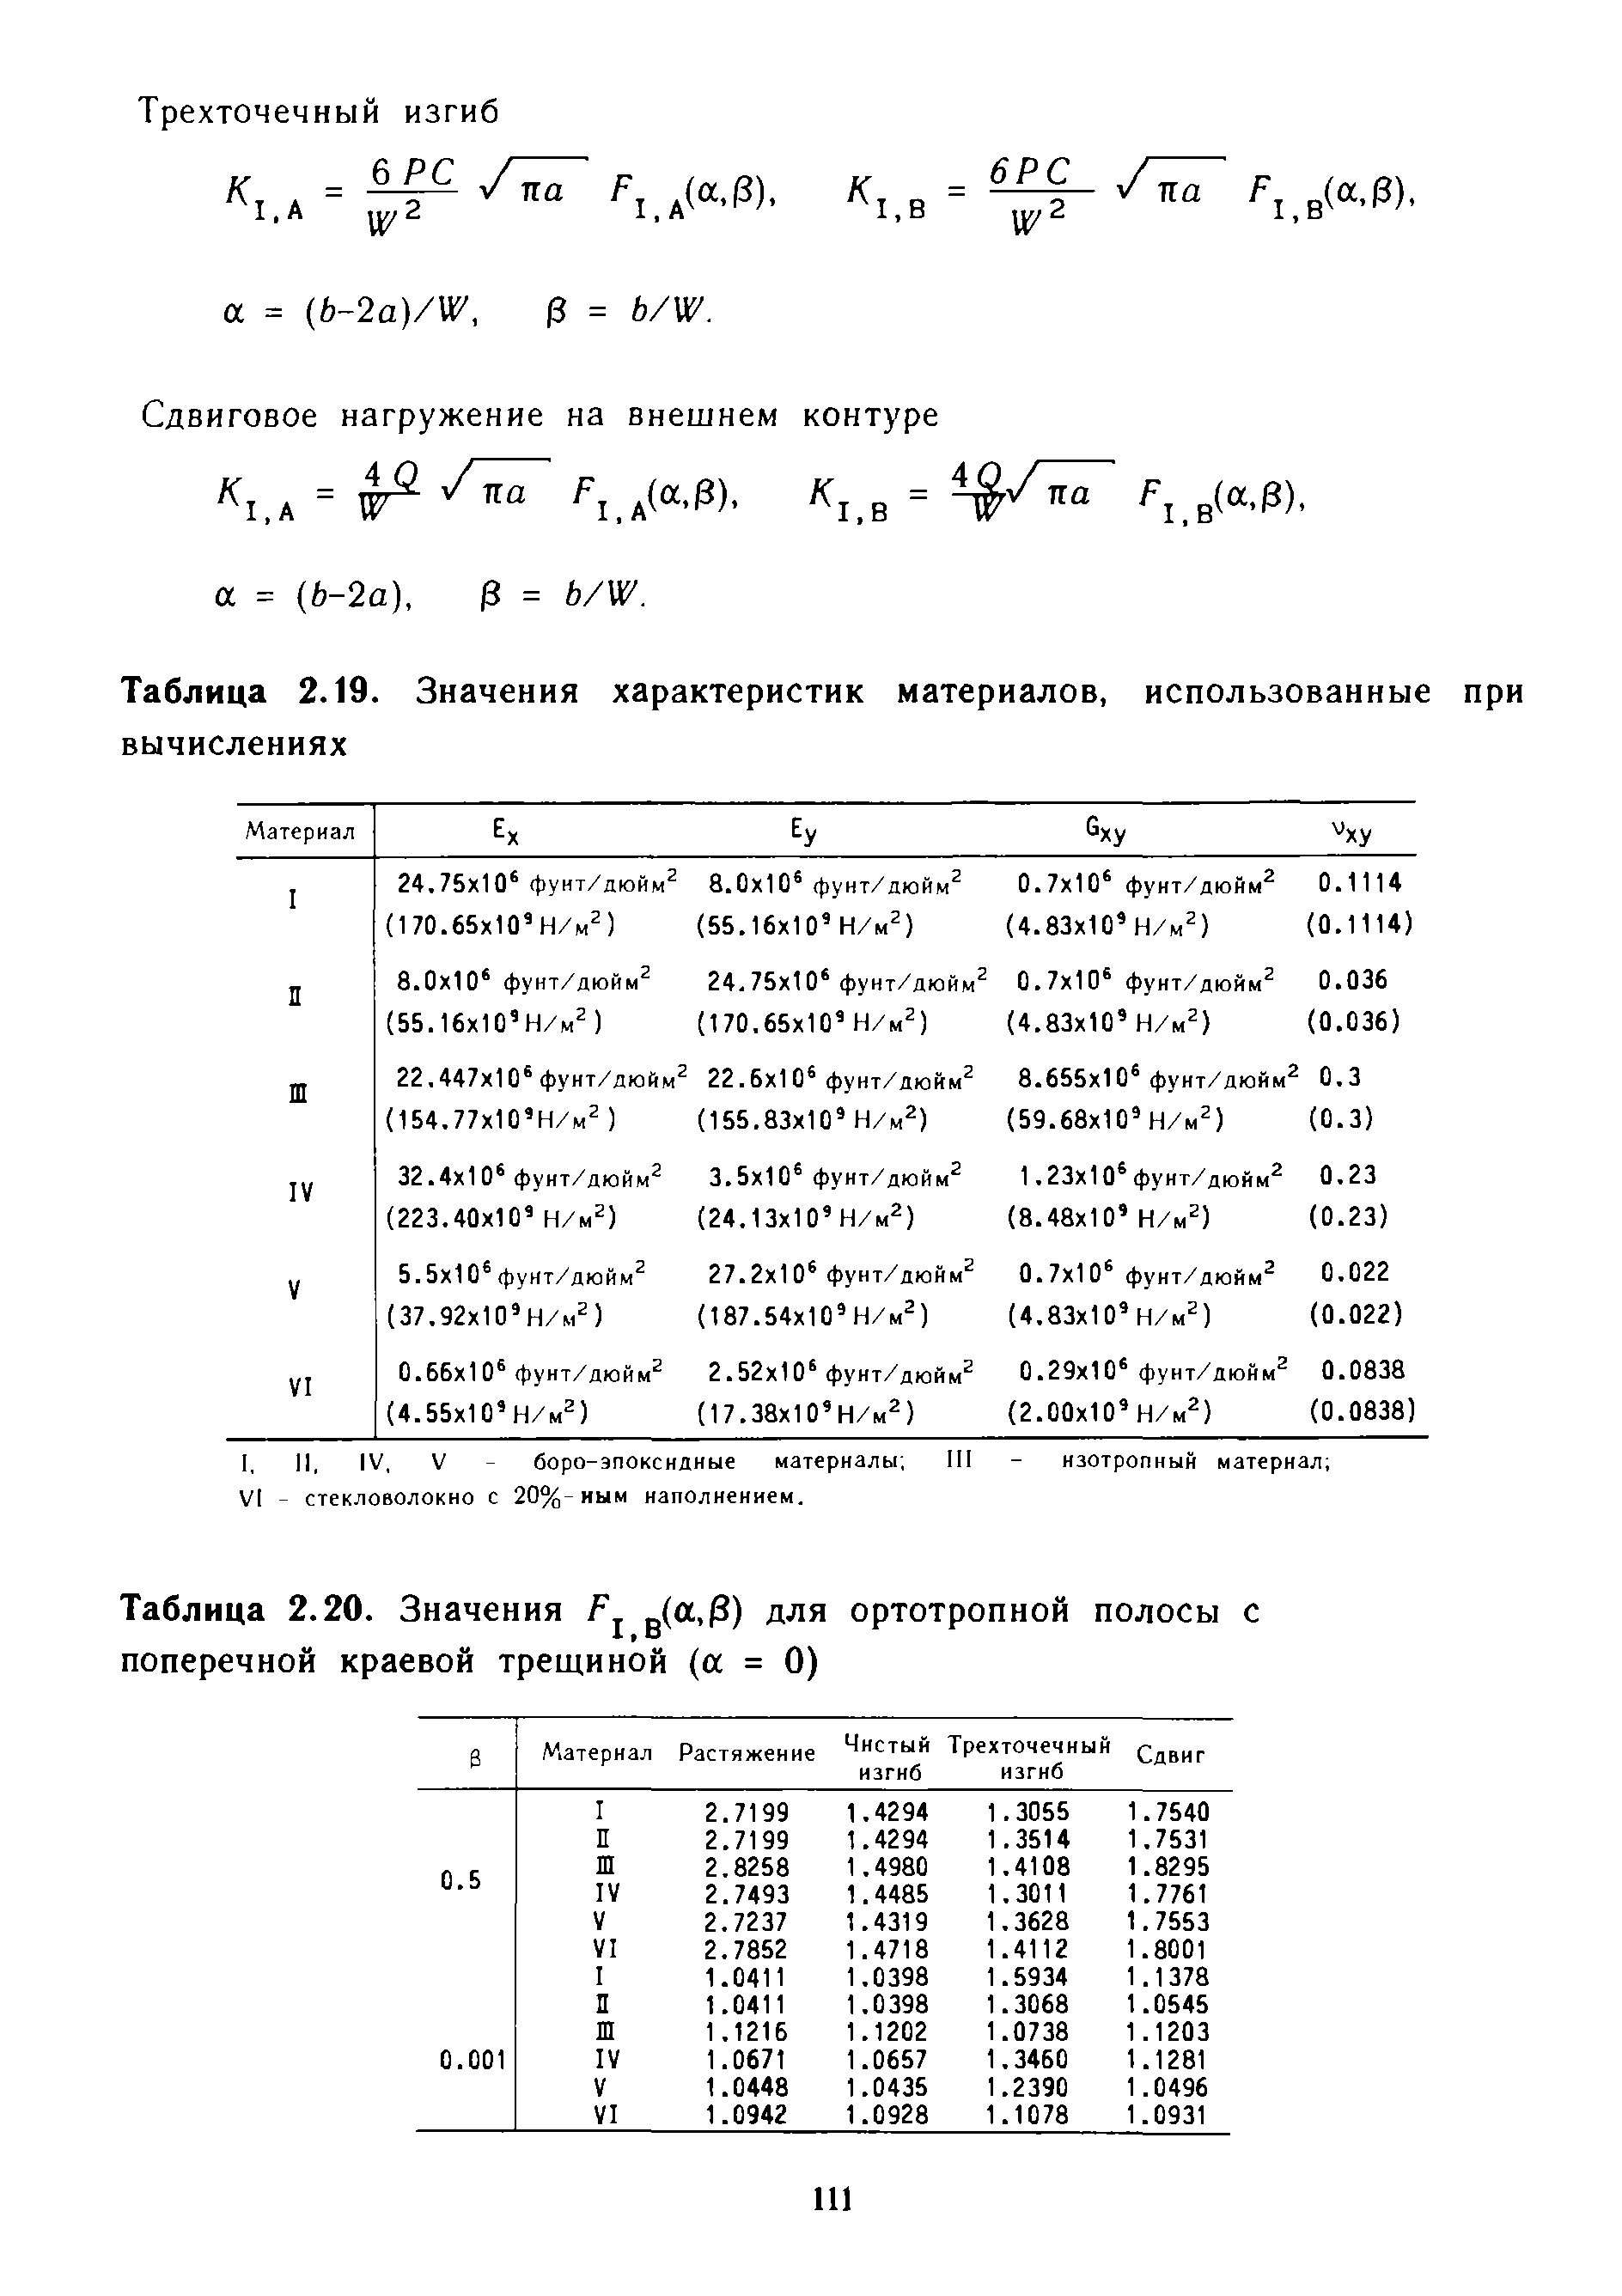 Сдвиговое нагружение на внешнем контуре а = (Ь-2а), Э = b/W.
